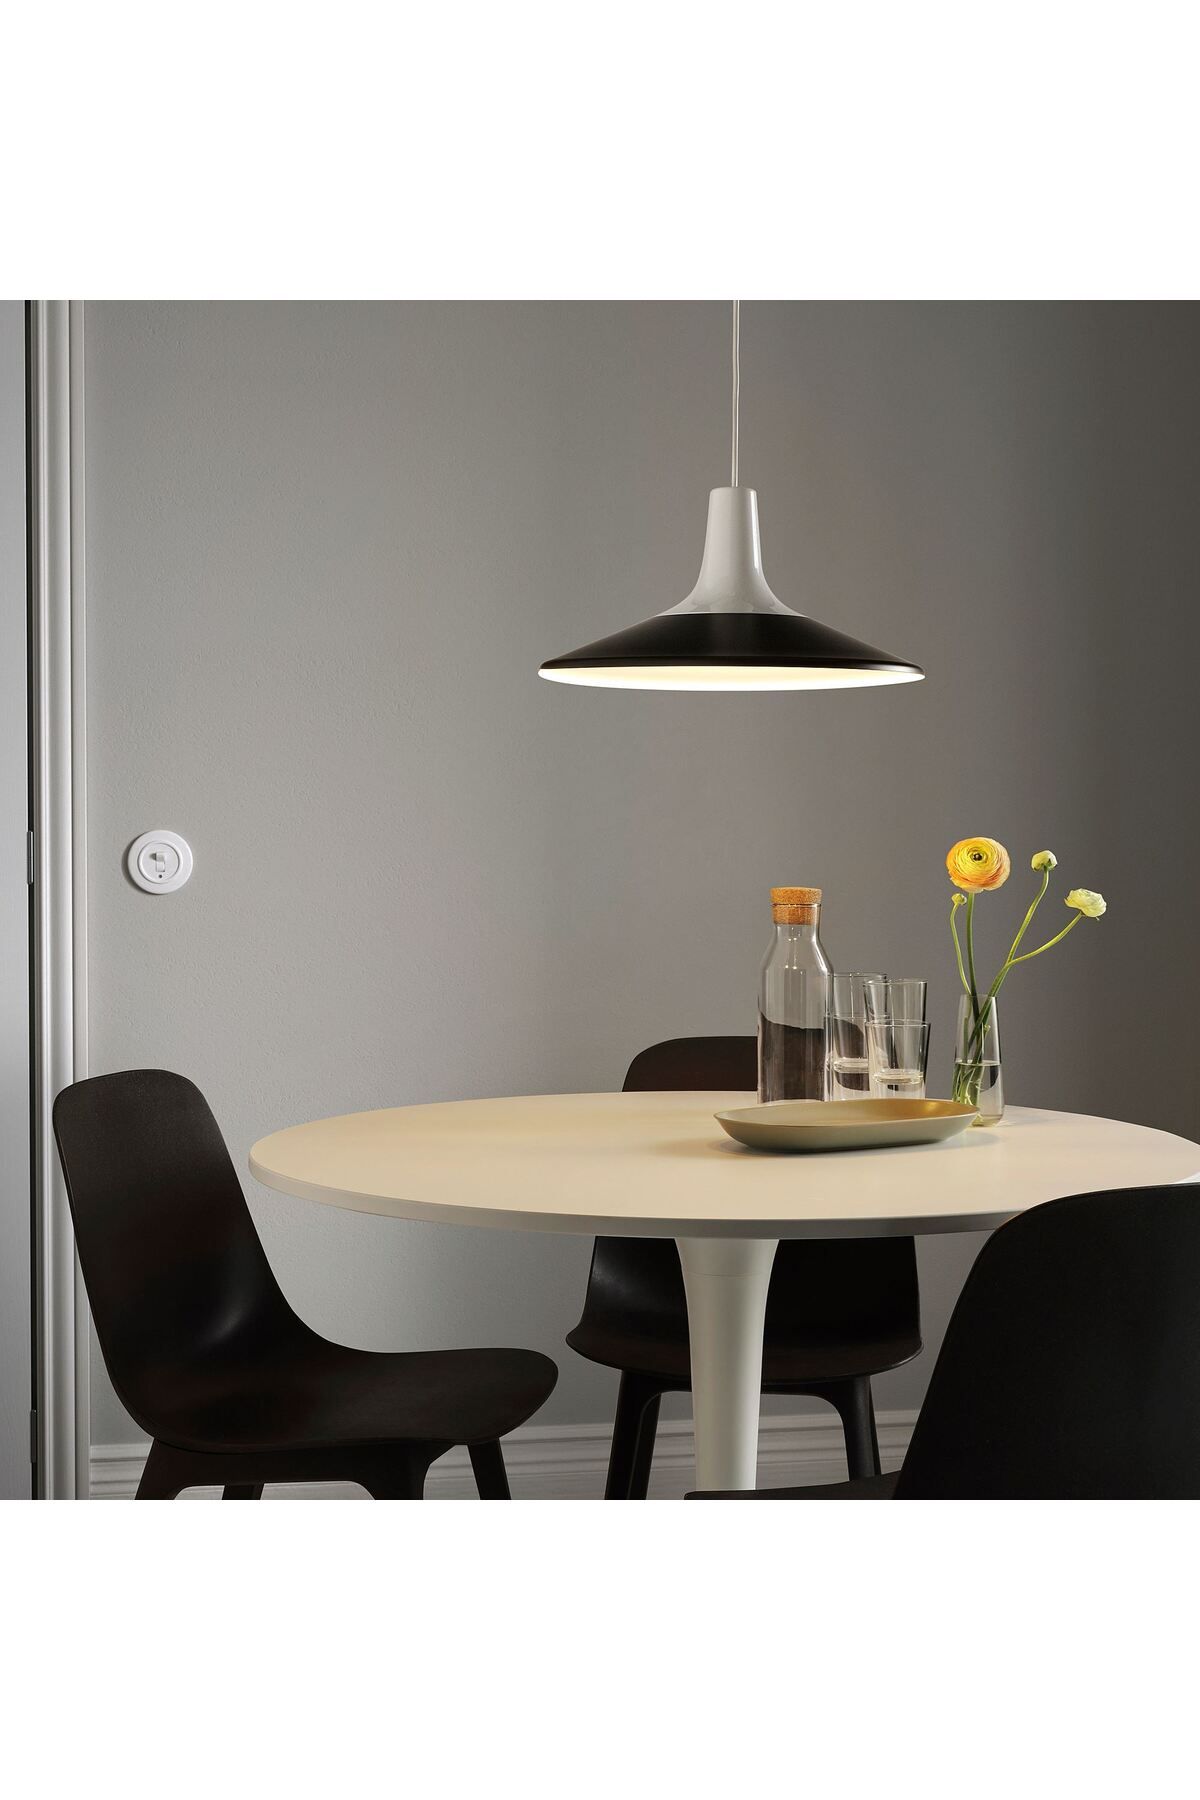 IKEA sarkıt lamba, beyaz-siyah, 38 cm Yemek masanıza veya mutfak adanıza asmak için mükemmel